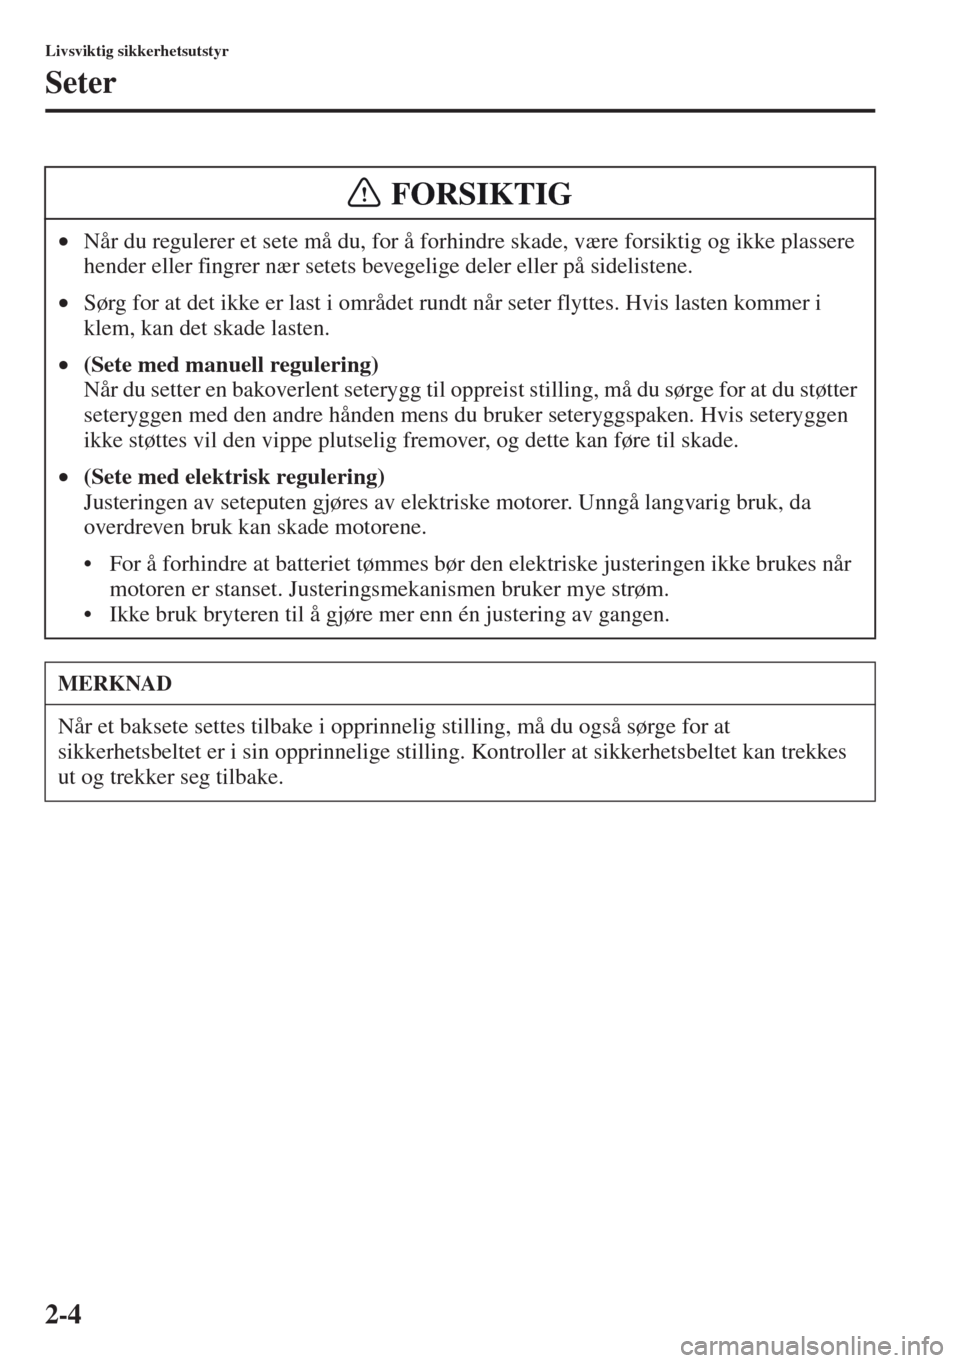 MAZDA MODEL CX-5 2013  Brukerhåndbok (in Norwegian) 2-4
Livsviktig sikkerhetsutstyr
Seter
•Når du regulerer et sete må du, for å forhindre skade, være forsiktig og ikke plassere 
hender eller fingrer nær setets bevegelige deler eller på sidelis